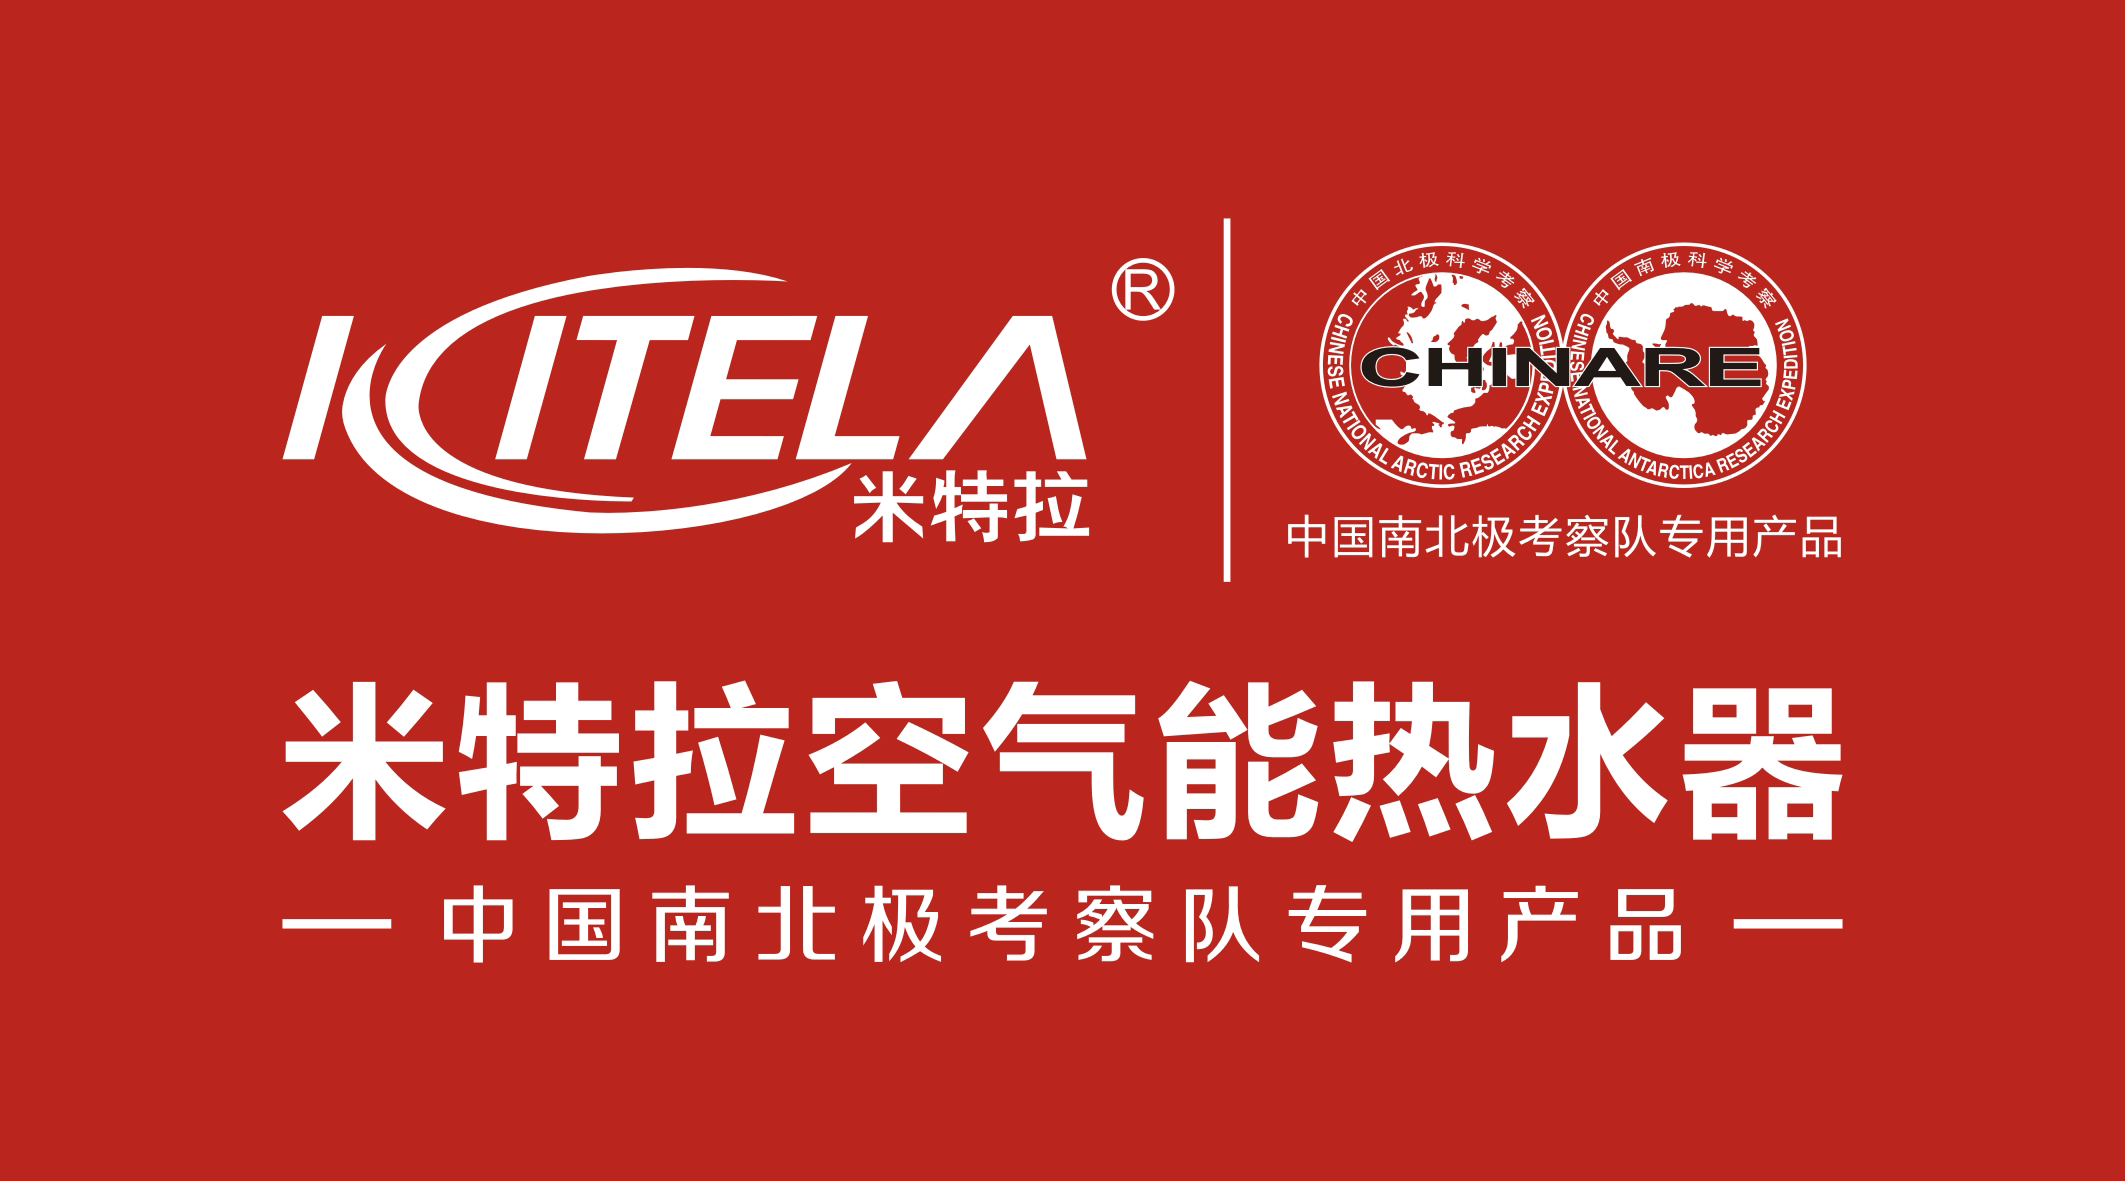 广东米特拉电器科技有限公司